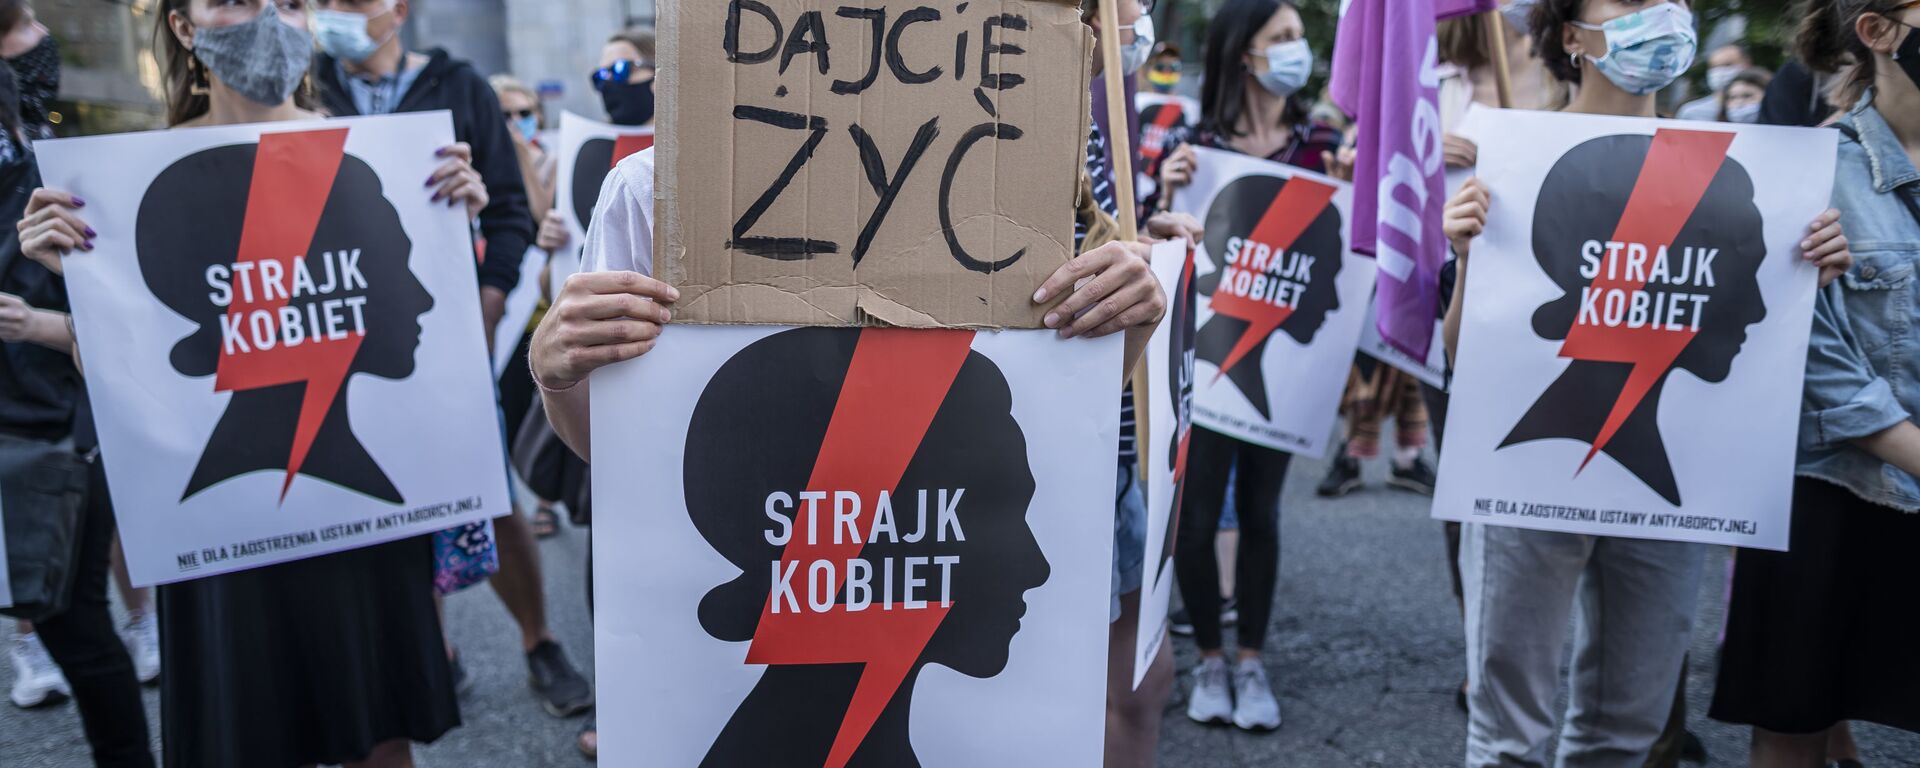 Polonya'nın başkenti Varşova'da aşırı muhafazakar hükümetin İstanbul Sözleşmesi'nden çekilme kararını protesto eden kadınlar Bırakın yaşayalım, Kadın grevi yazılı pankartlar da açtı. - Sputnik Türkiye, 1920, 26.07.2020